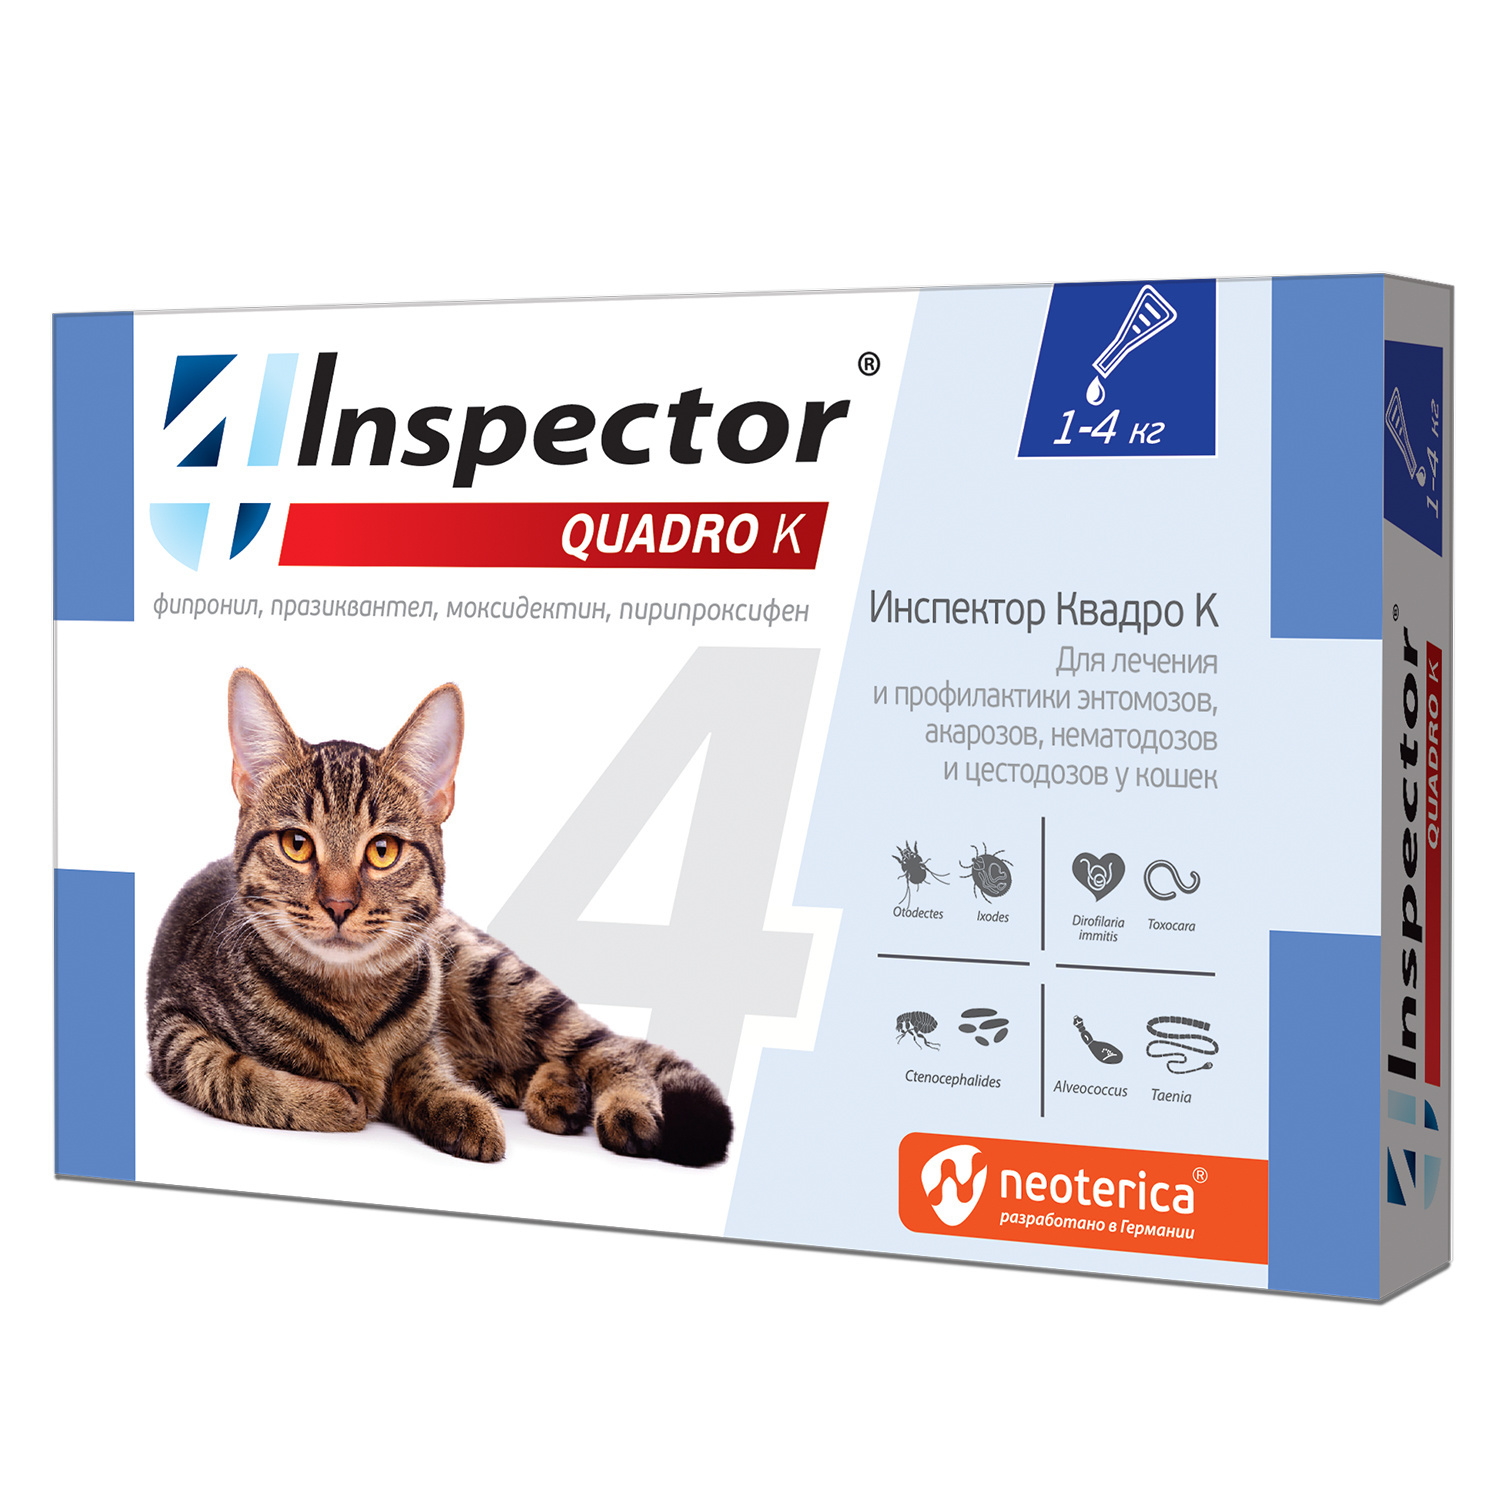 Inspector Inspector quadro капли на холку для кошек 1-4 кг, от глистов, насекомых, клещей (180 г) 41492